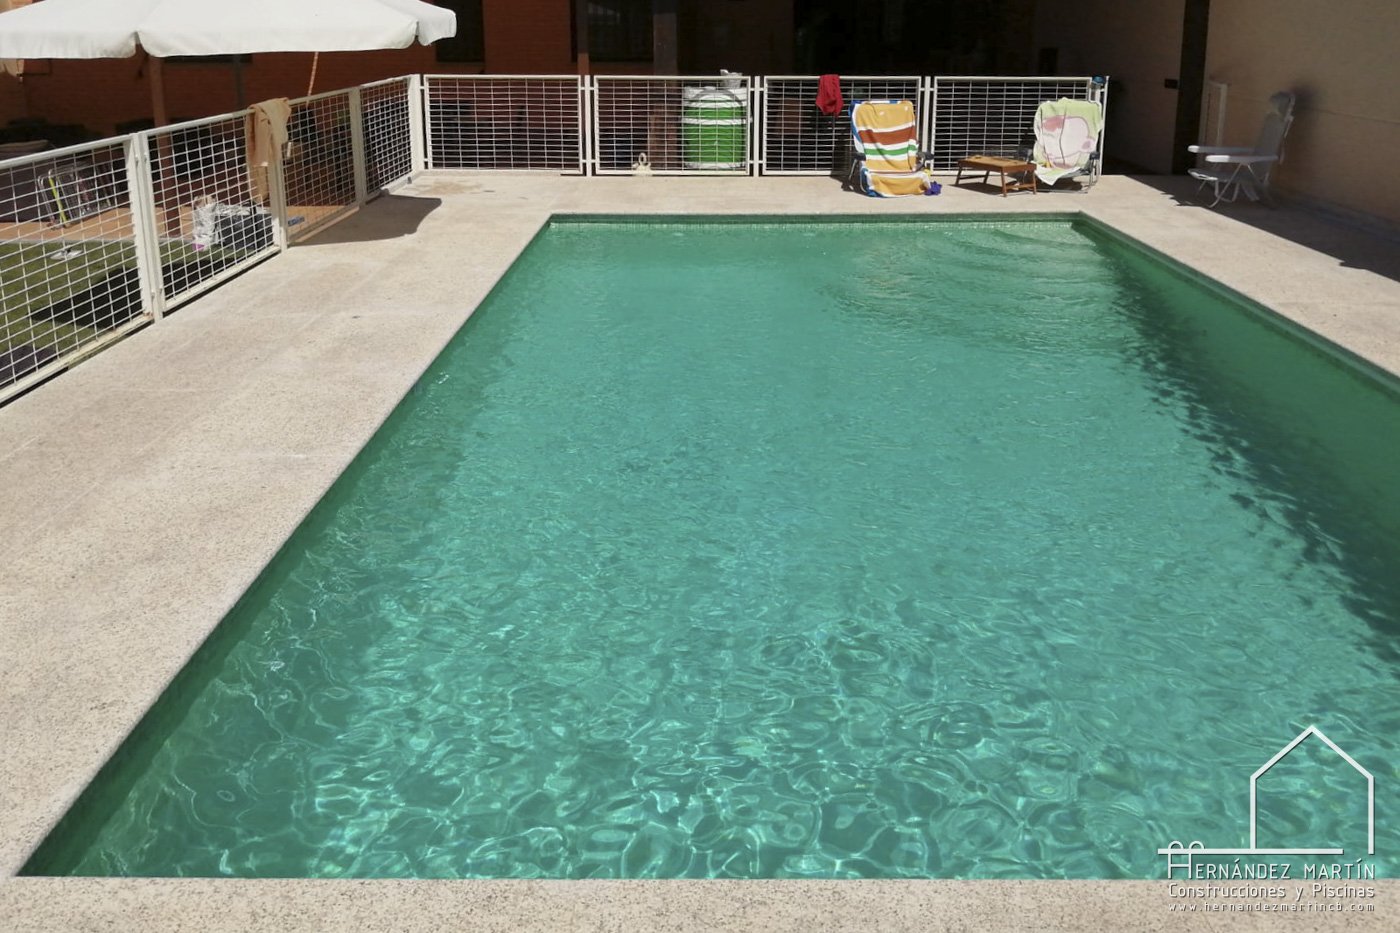 hernandez martin construcciones y piscinas experiencia obra piscina zamora salamanca valladolid granito (1)